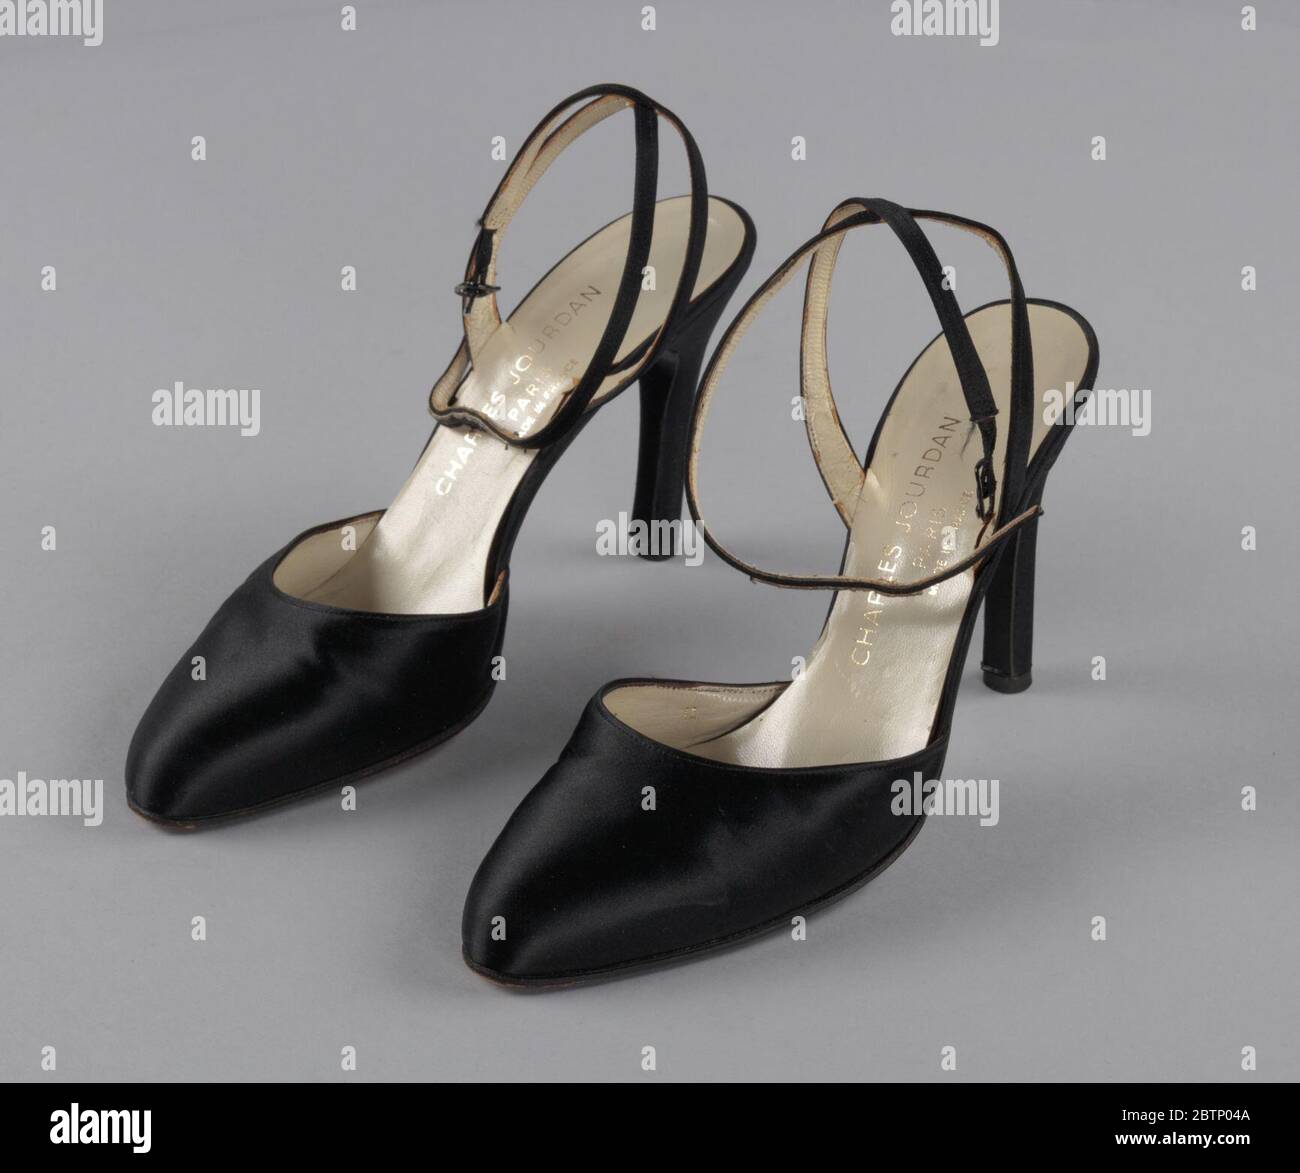 Zapatos De La Correa Del Tobillo Fotos e Imágenes de stock - Alamy